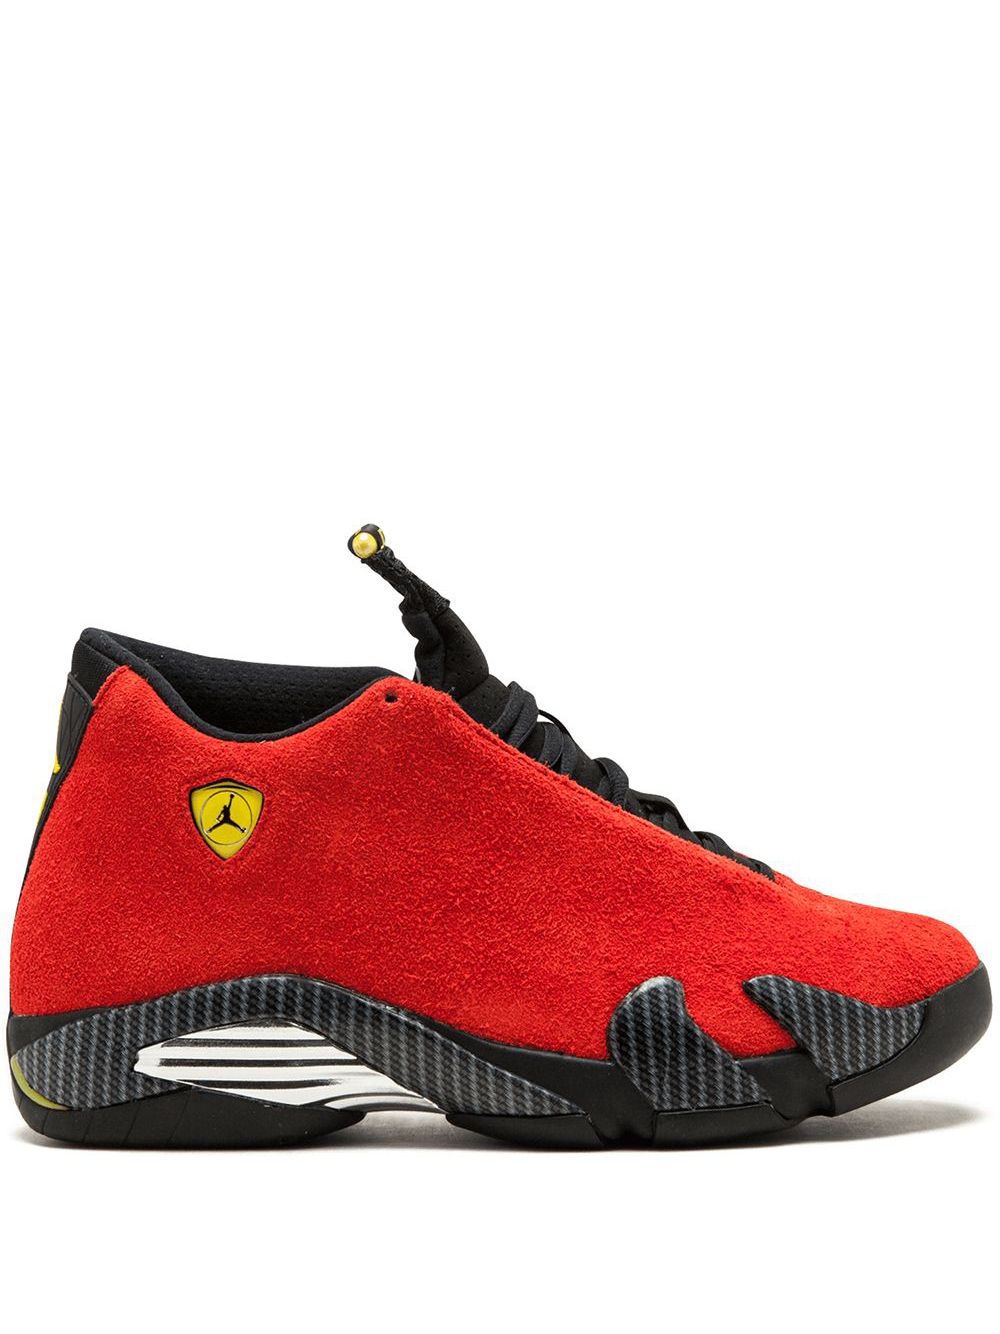 Jordan Air Jordan 14 Retro ''Ferrari" sneakers - Red